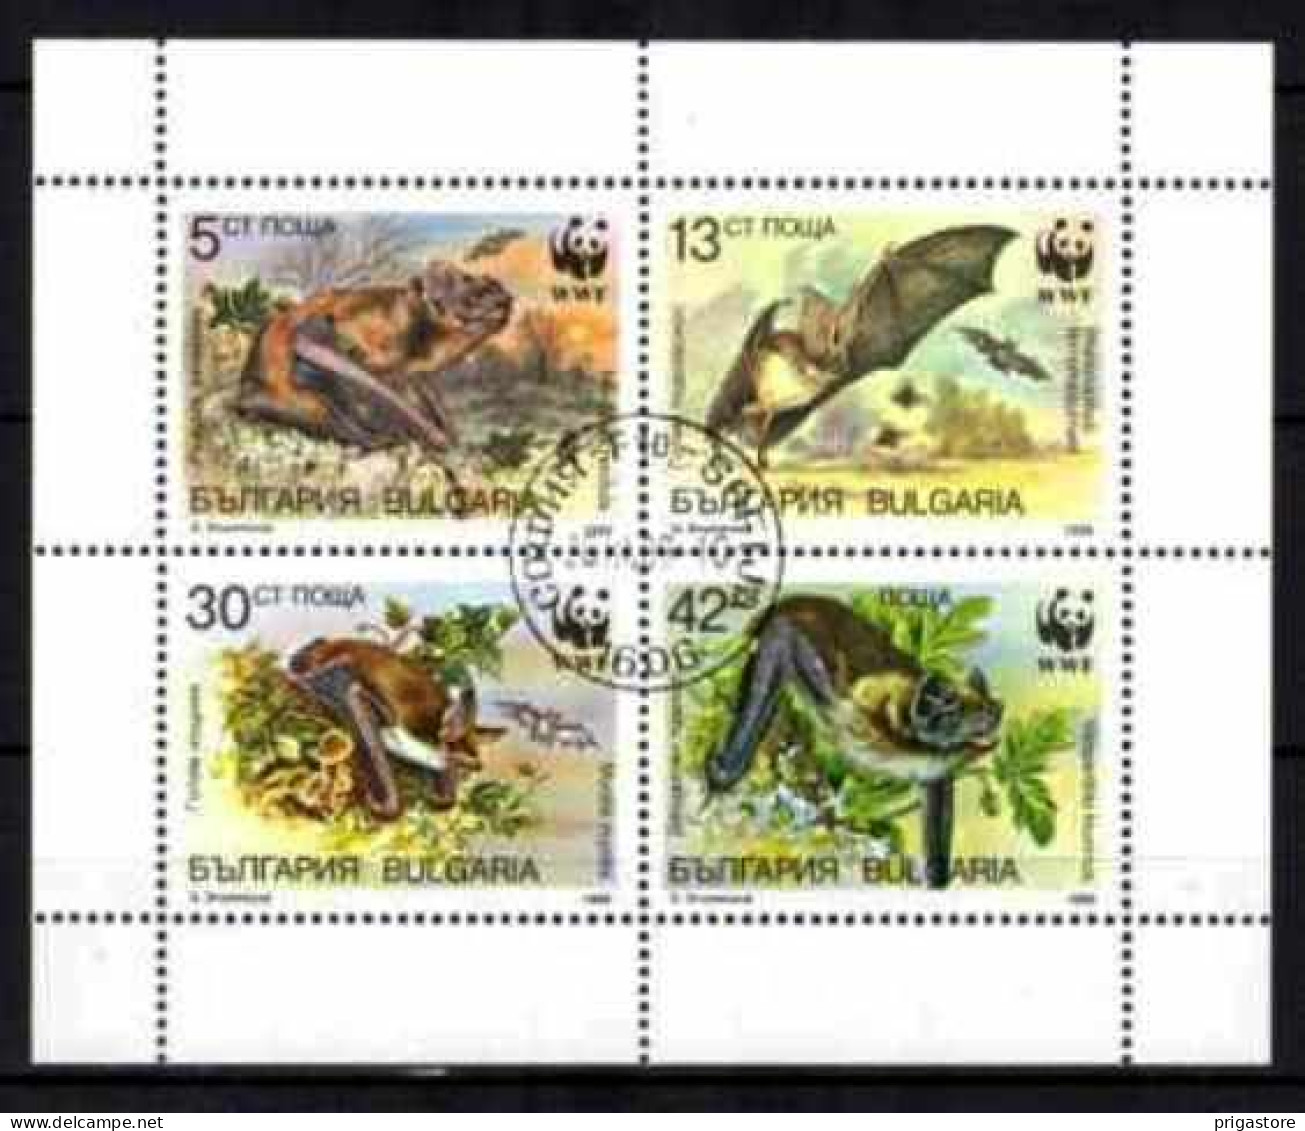 Animaux Chauve-Souris Bulgarie 1989 (55) Yvert N° 3231 à 3234 Oblitéré Used - Bats